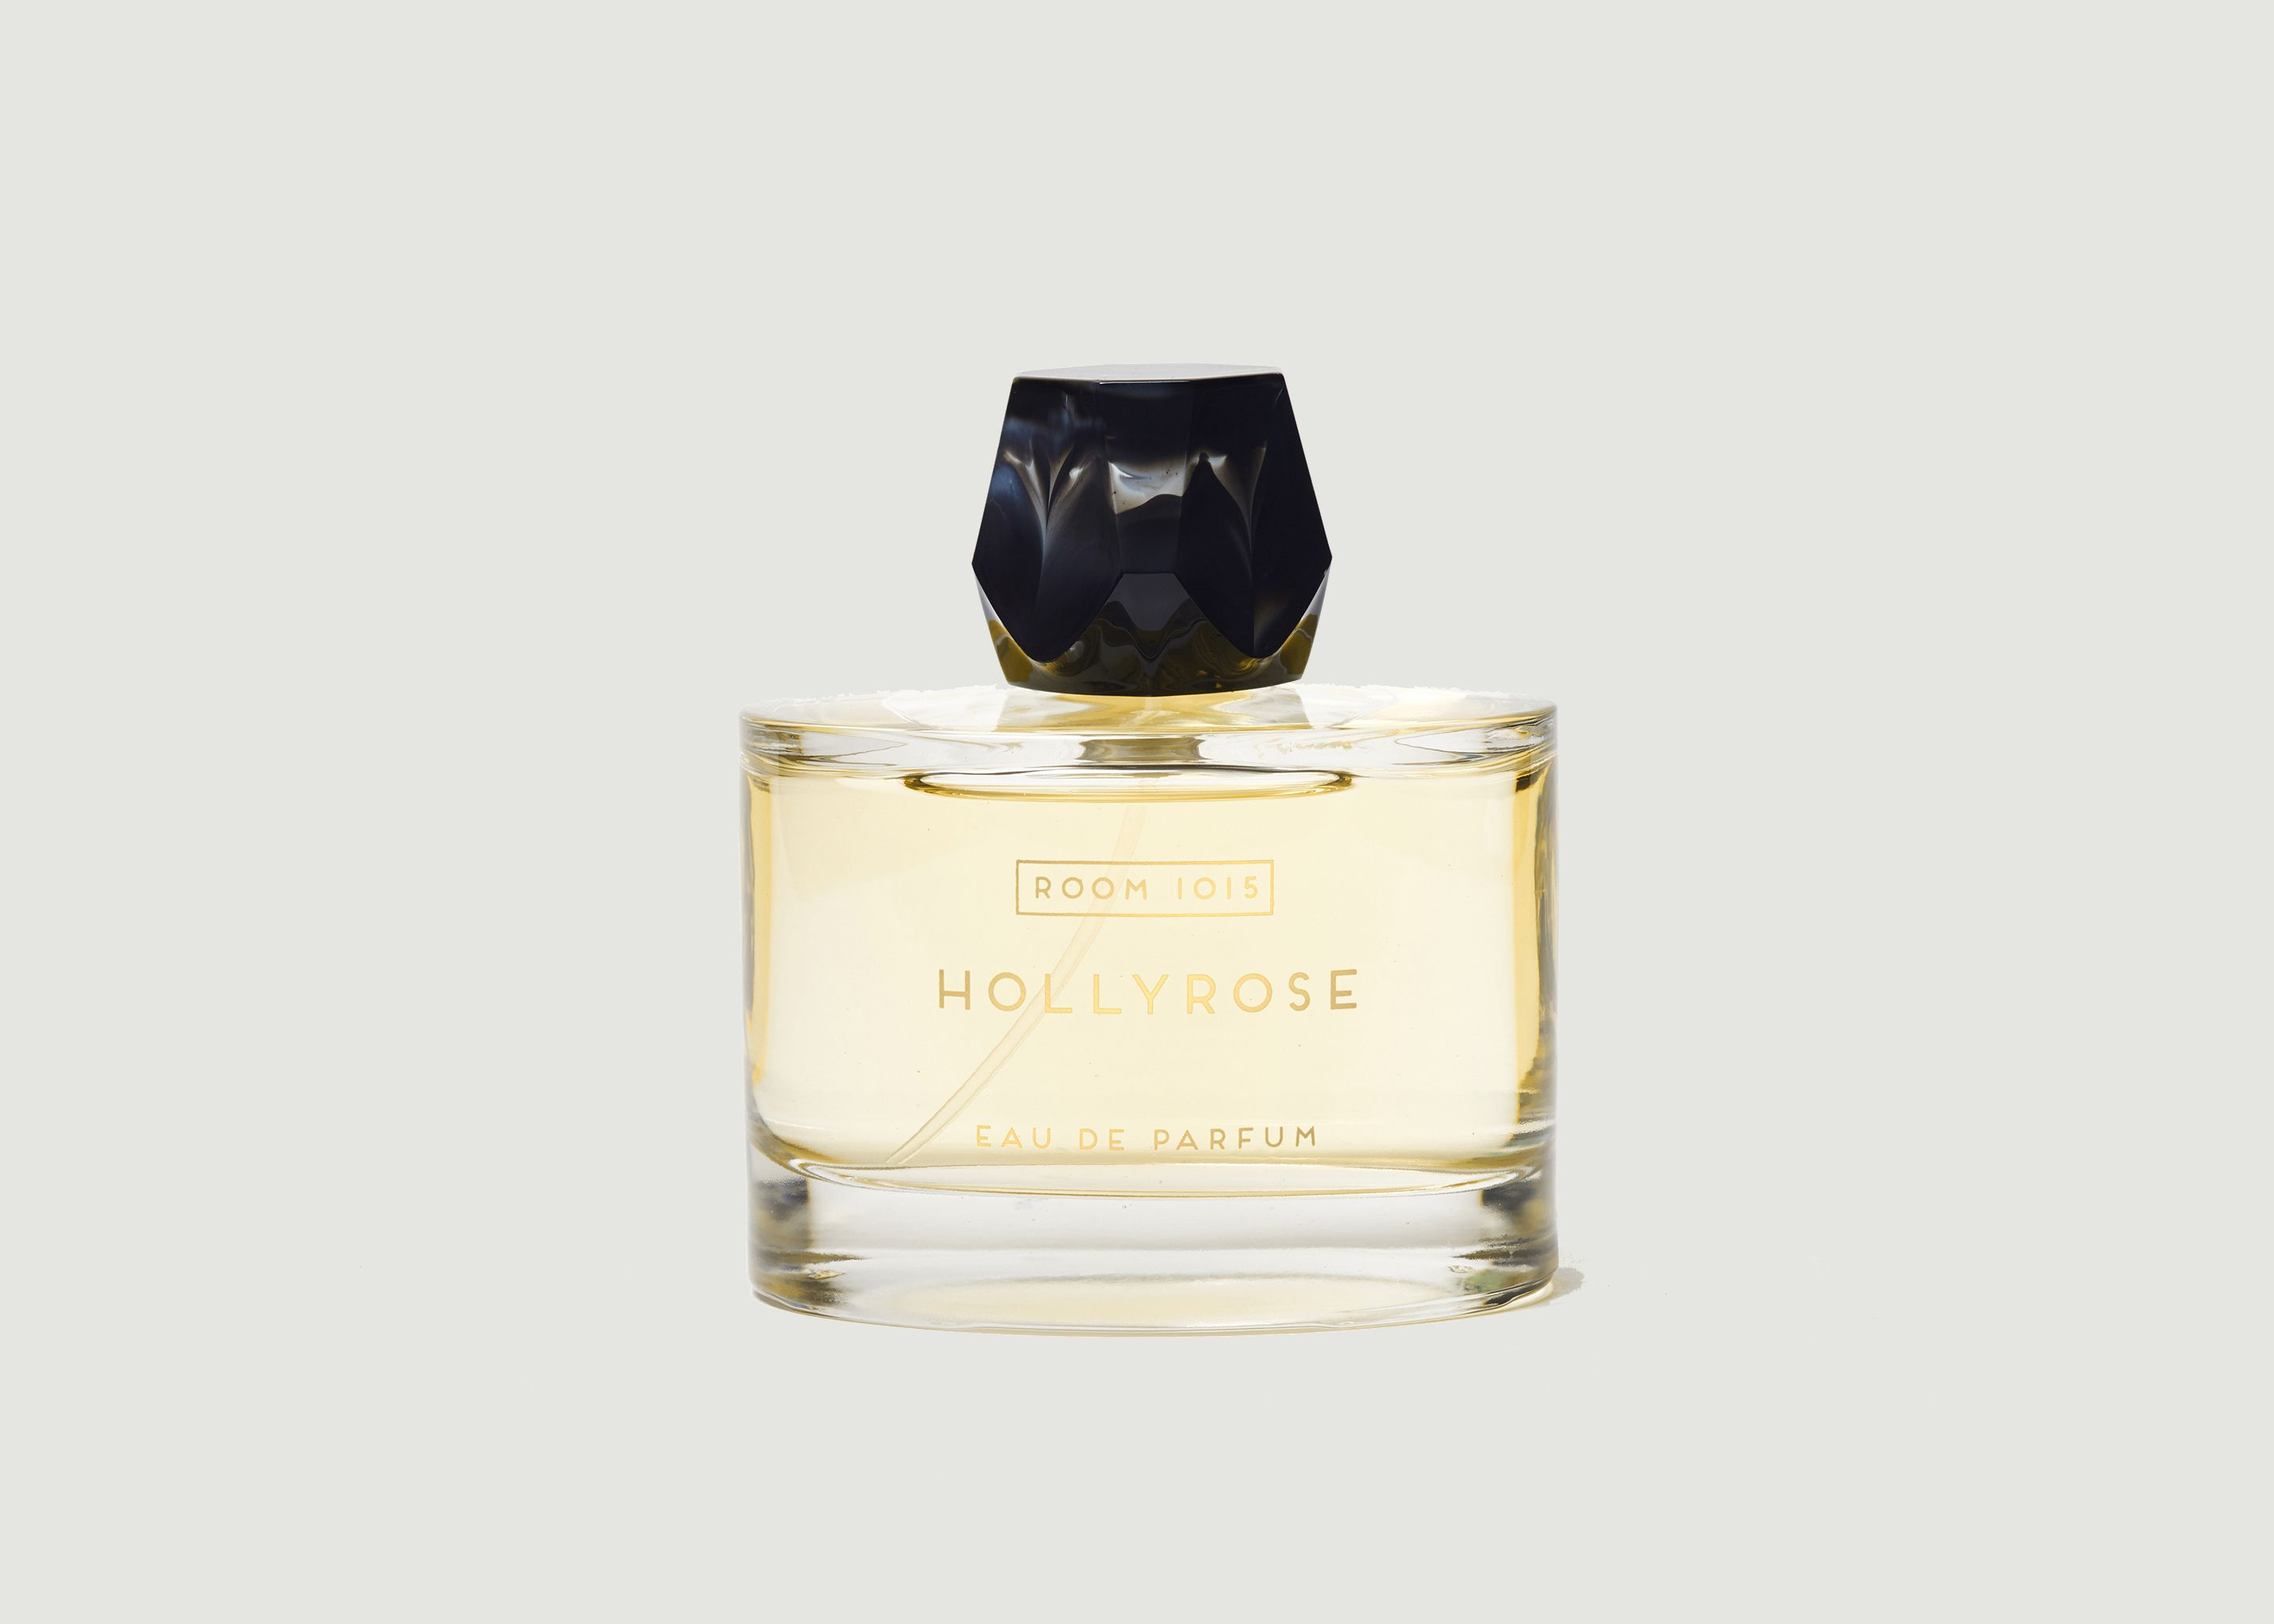 Hollyrose Perfume - Room 1015